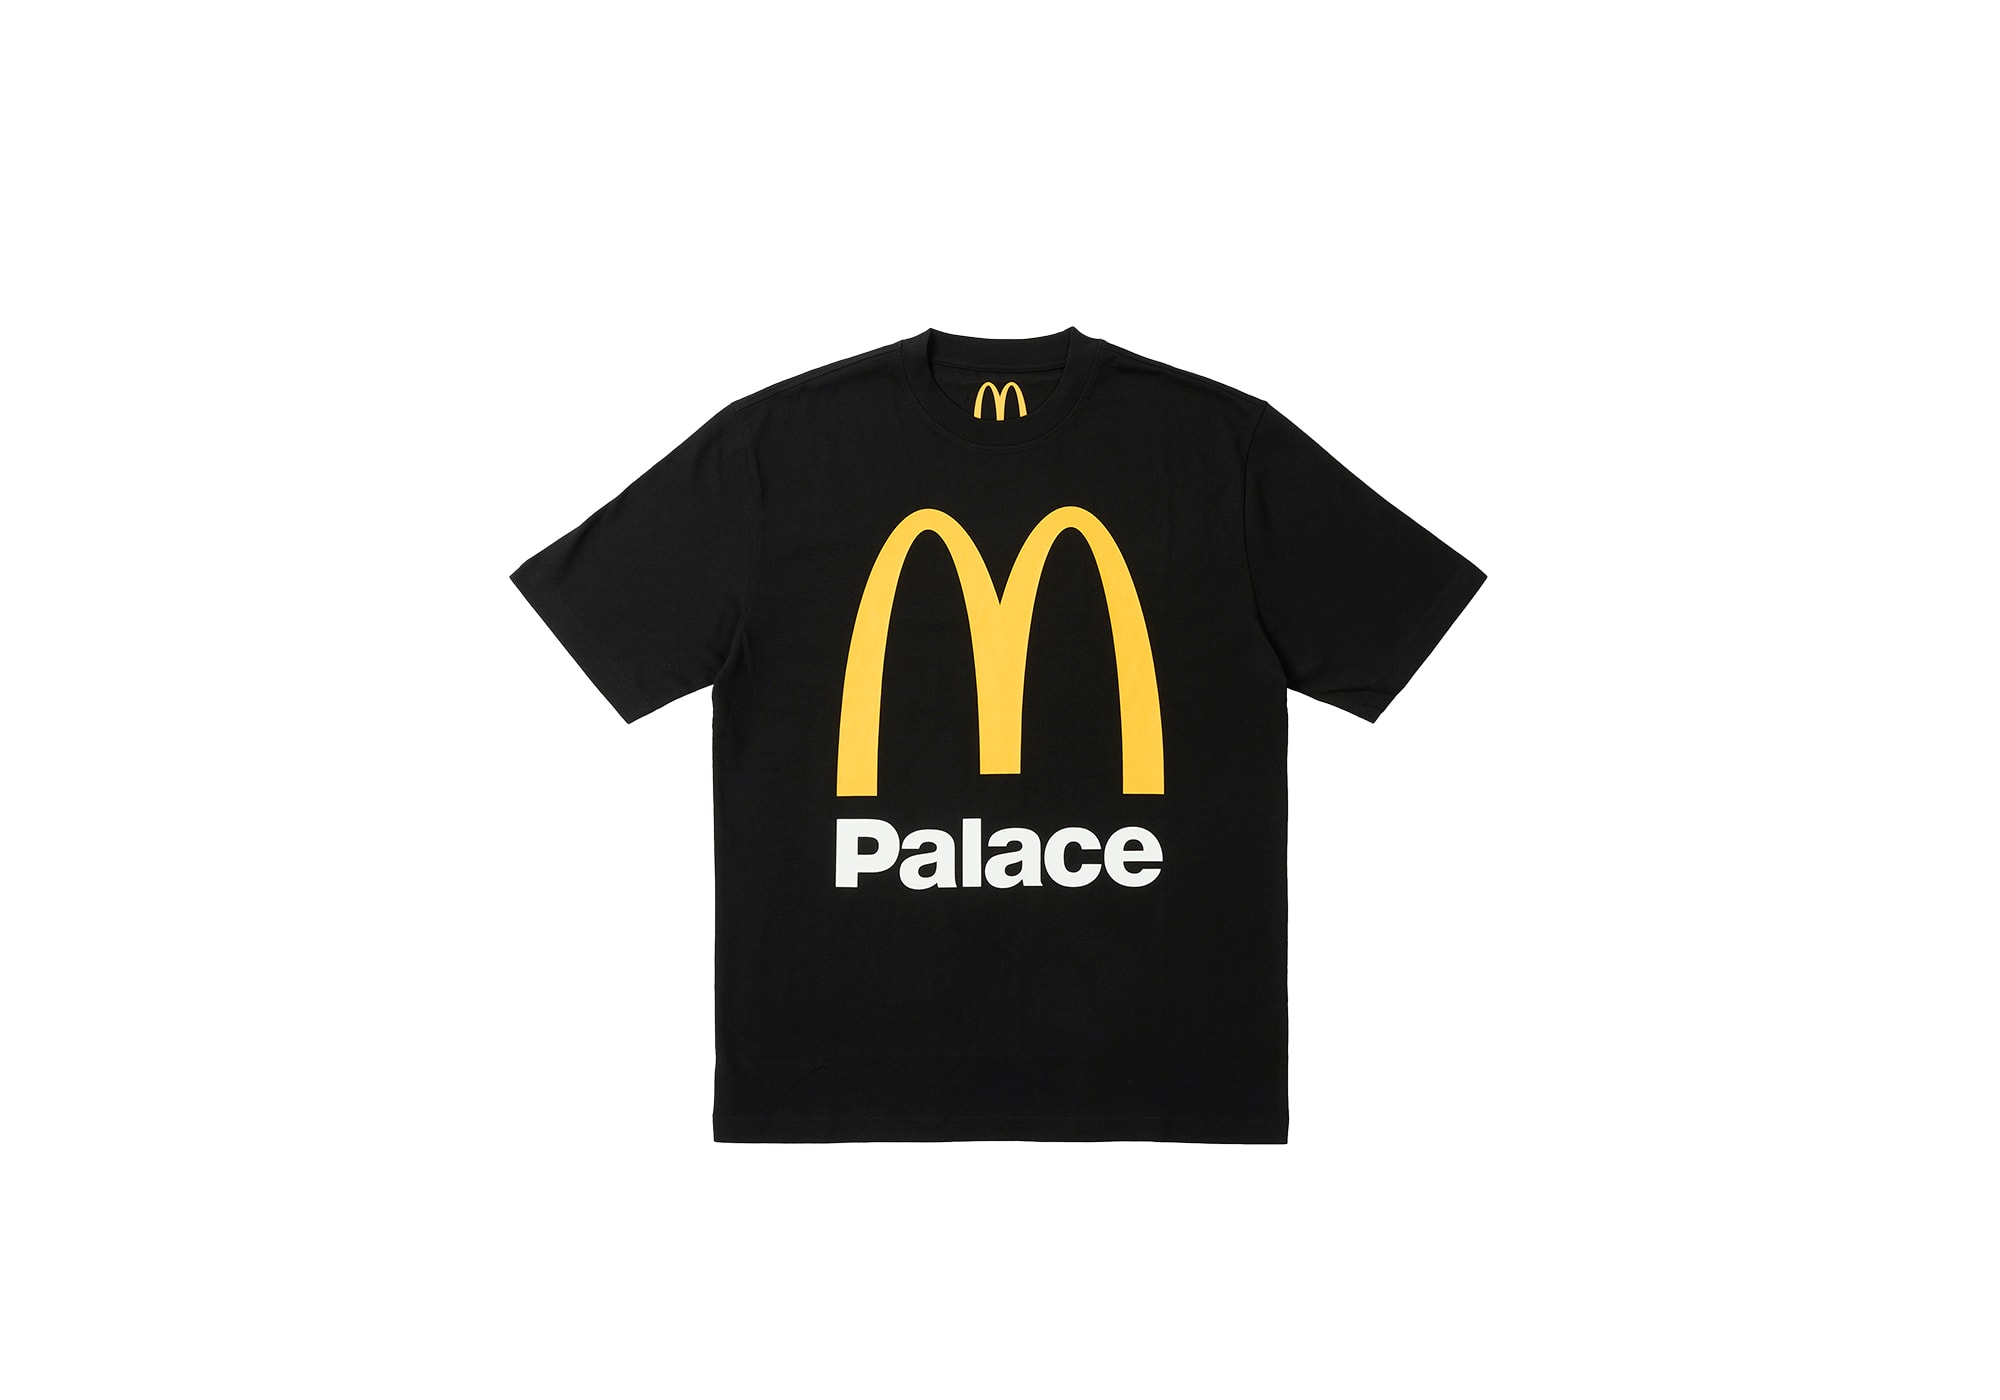 Palace Skateboards x McDonald’s 联名系列正式发布